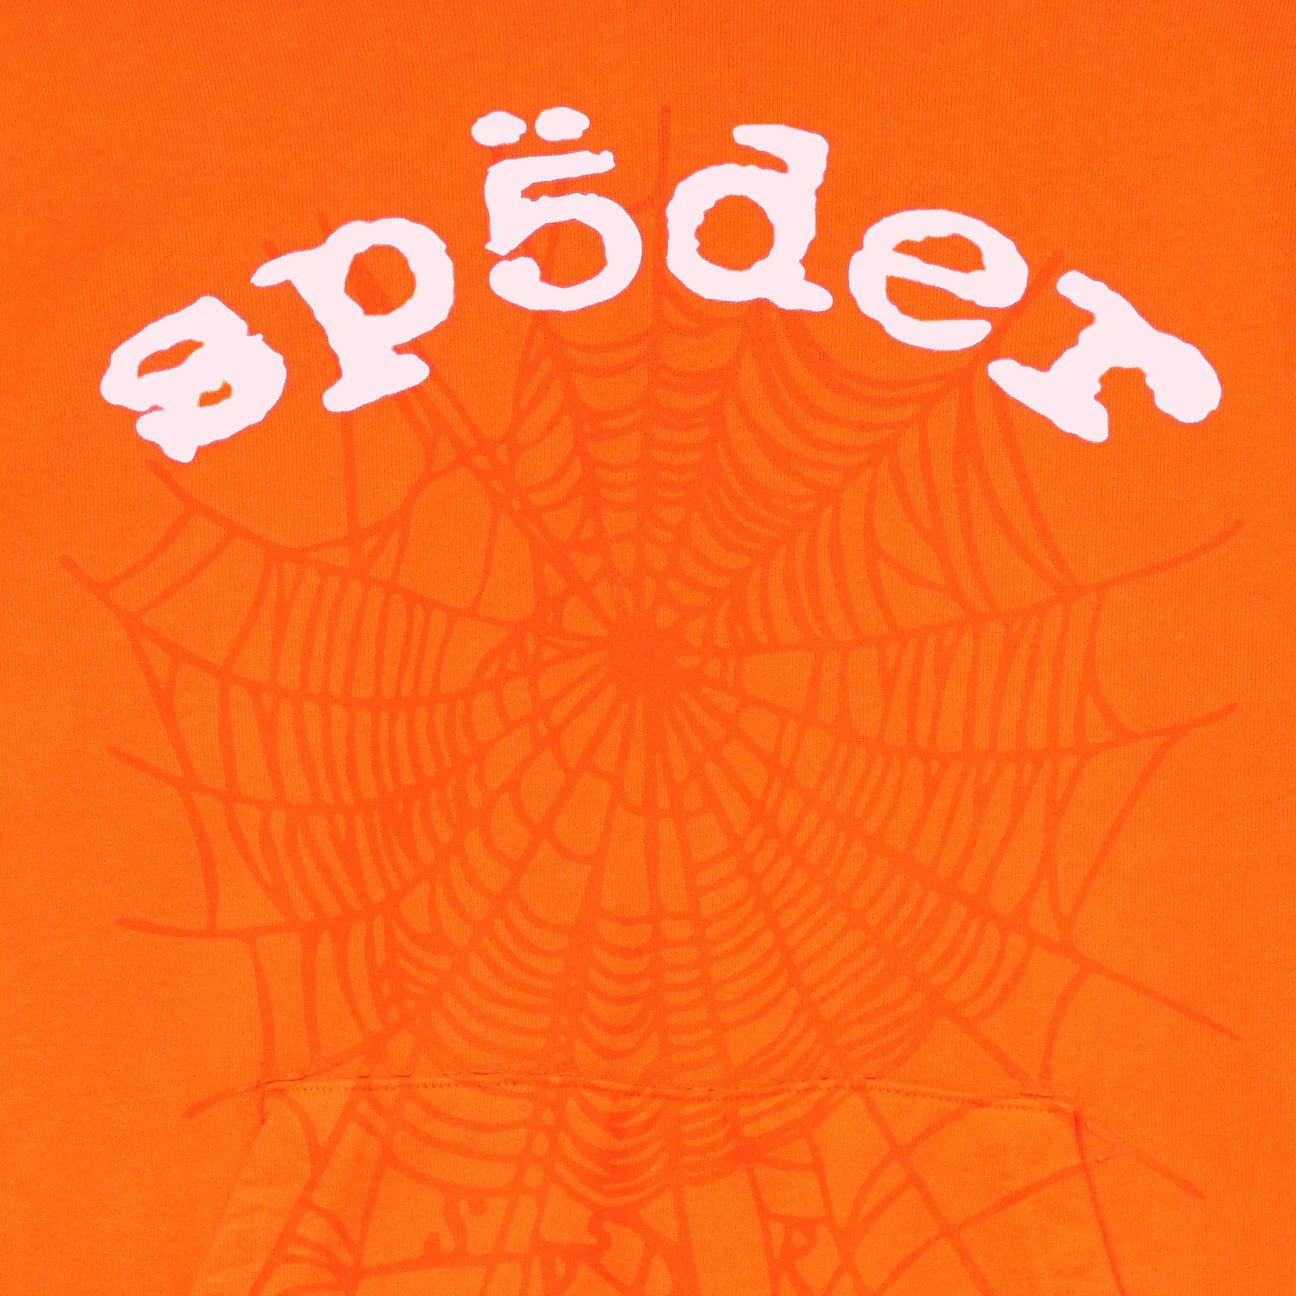 Sp5der Legacy Web Hoodie Orange - Supra Sneakers